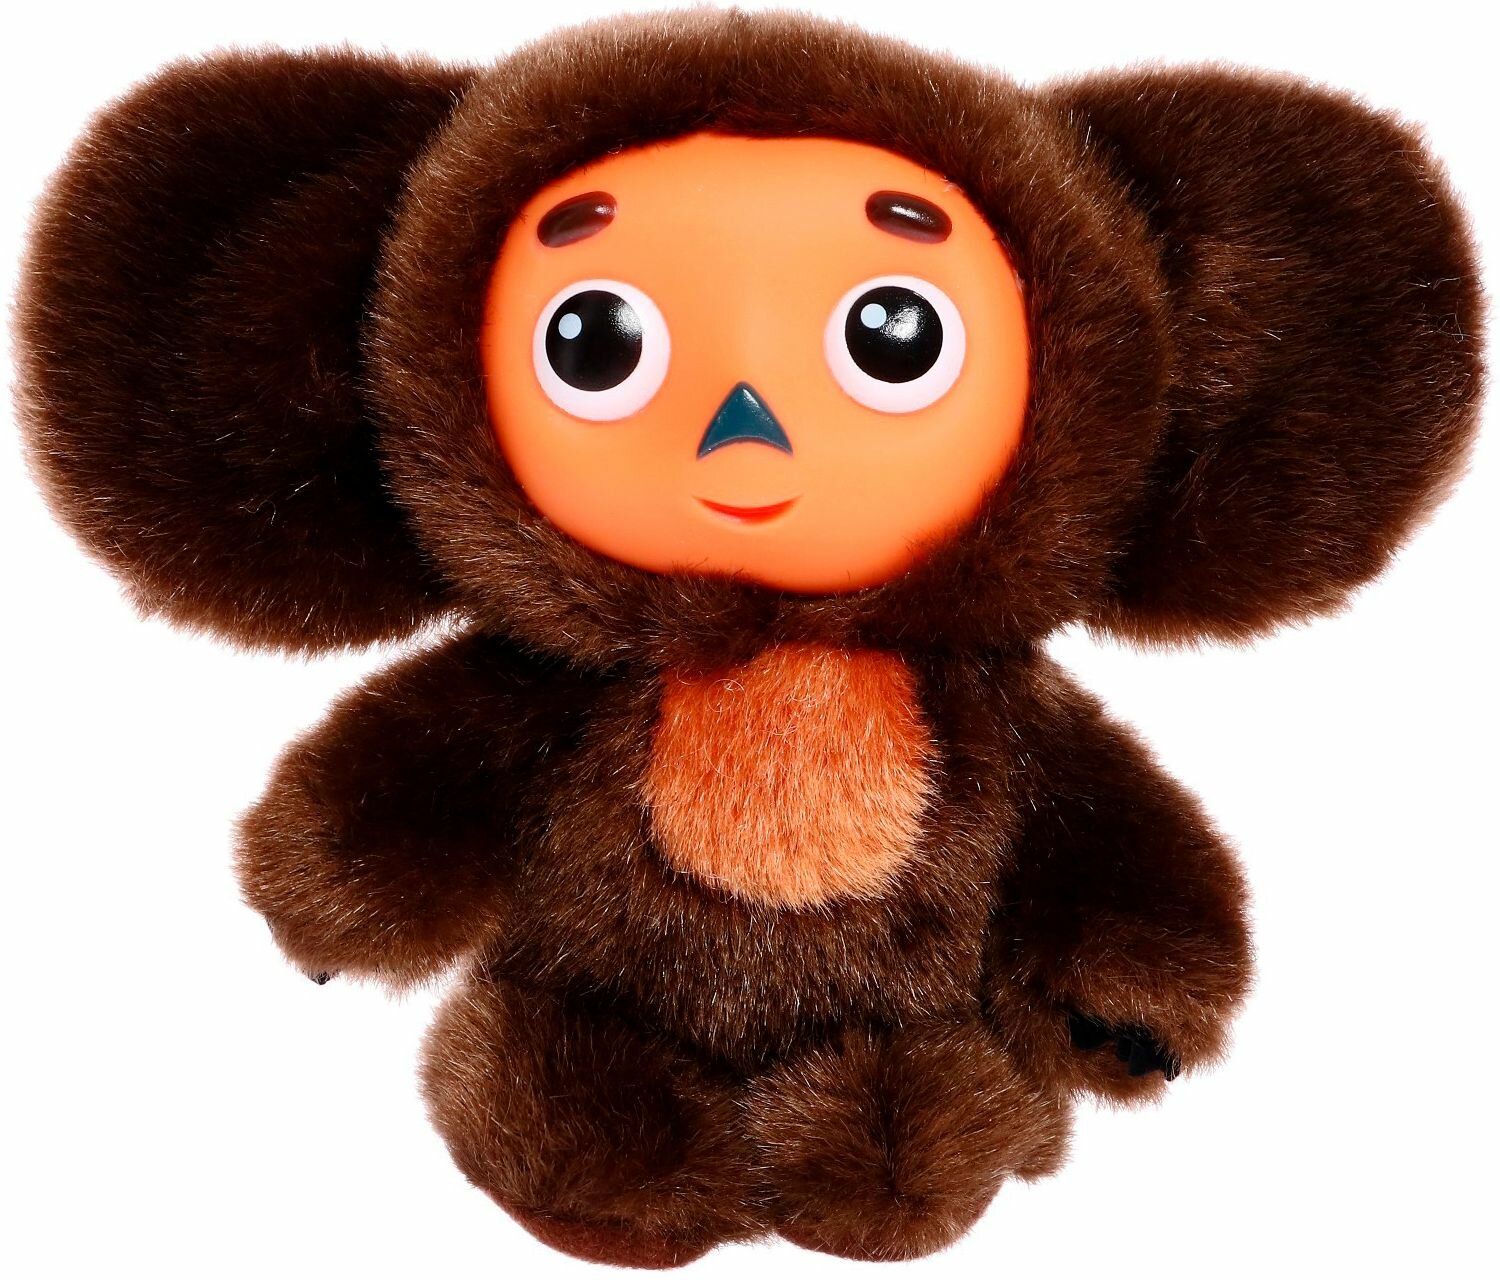 Мягкая игрушка "Чебурашка", милый плюшевый игрушечный персонаж из мультфильма, 14 см